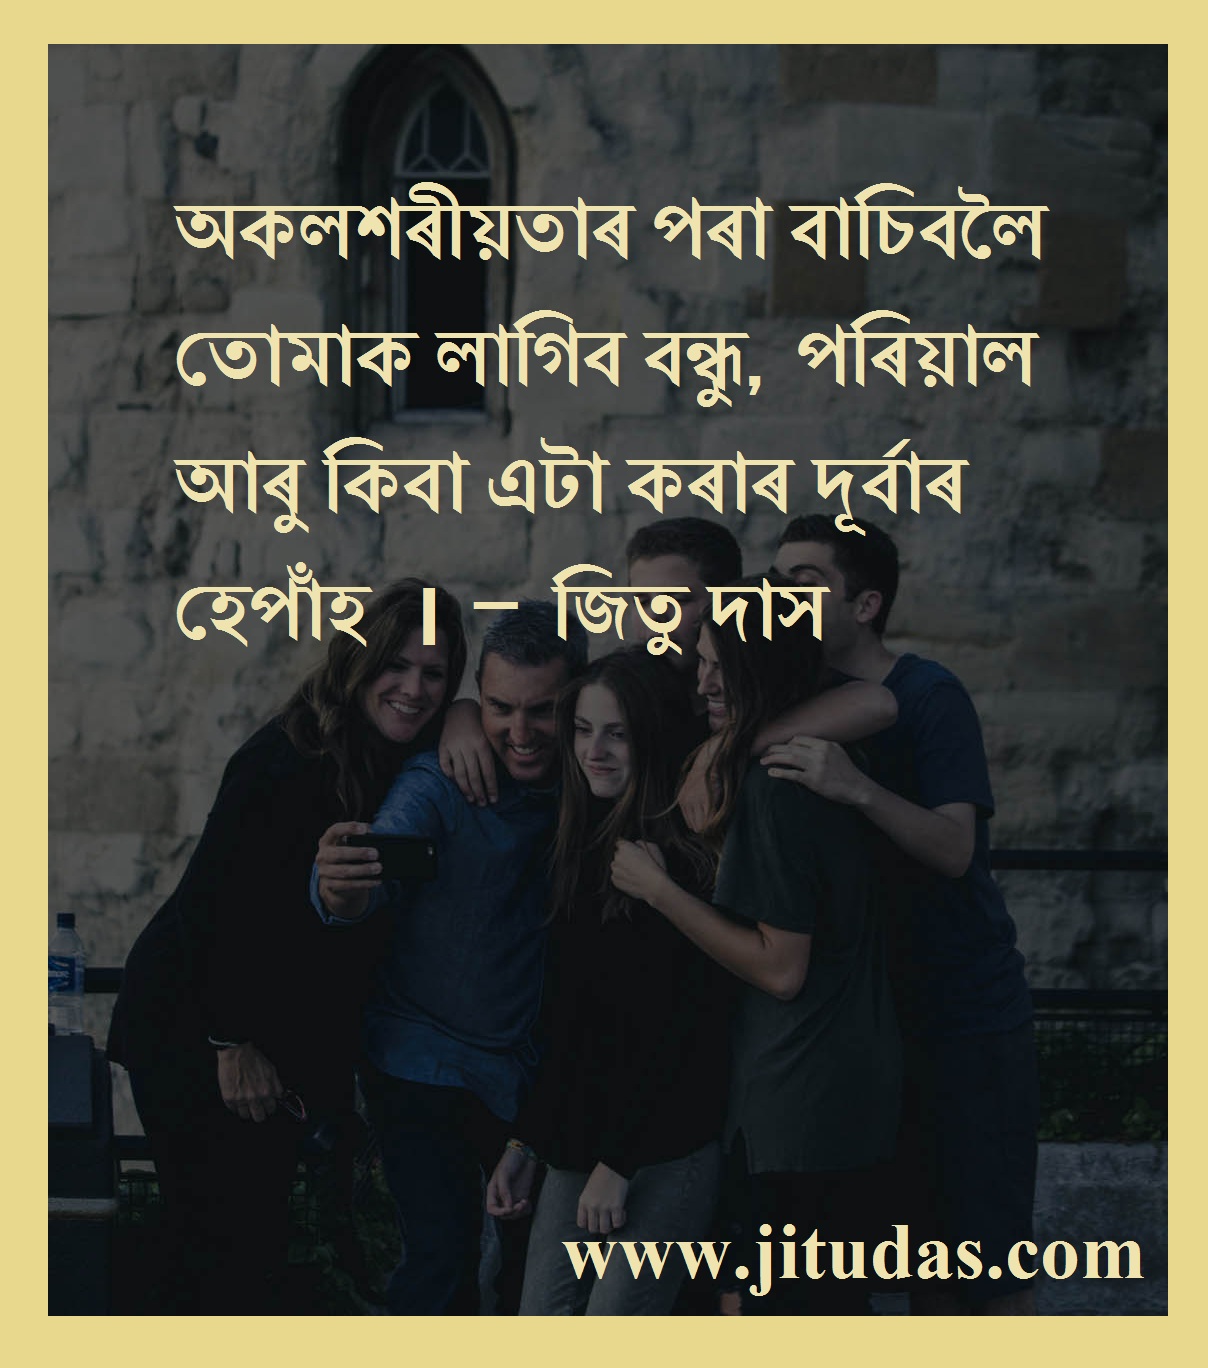 JItu Das's Blog: Assamese new Inspiring, motivational love and ...